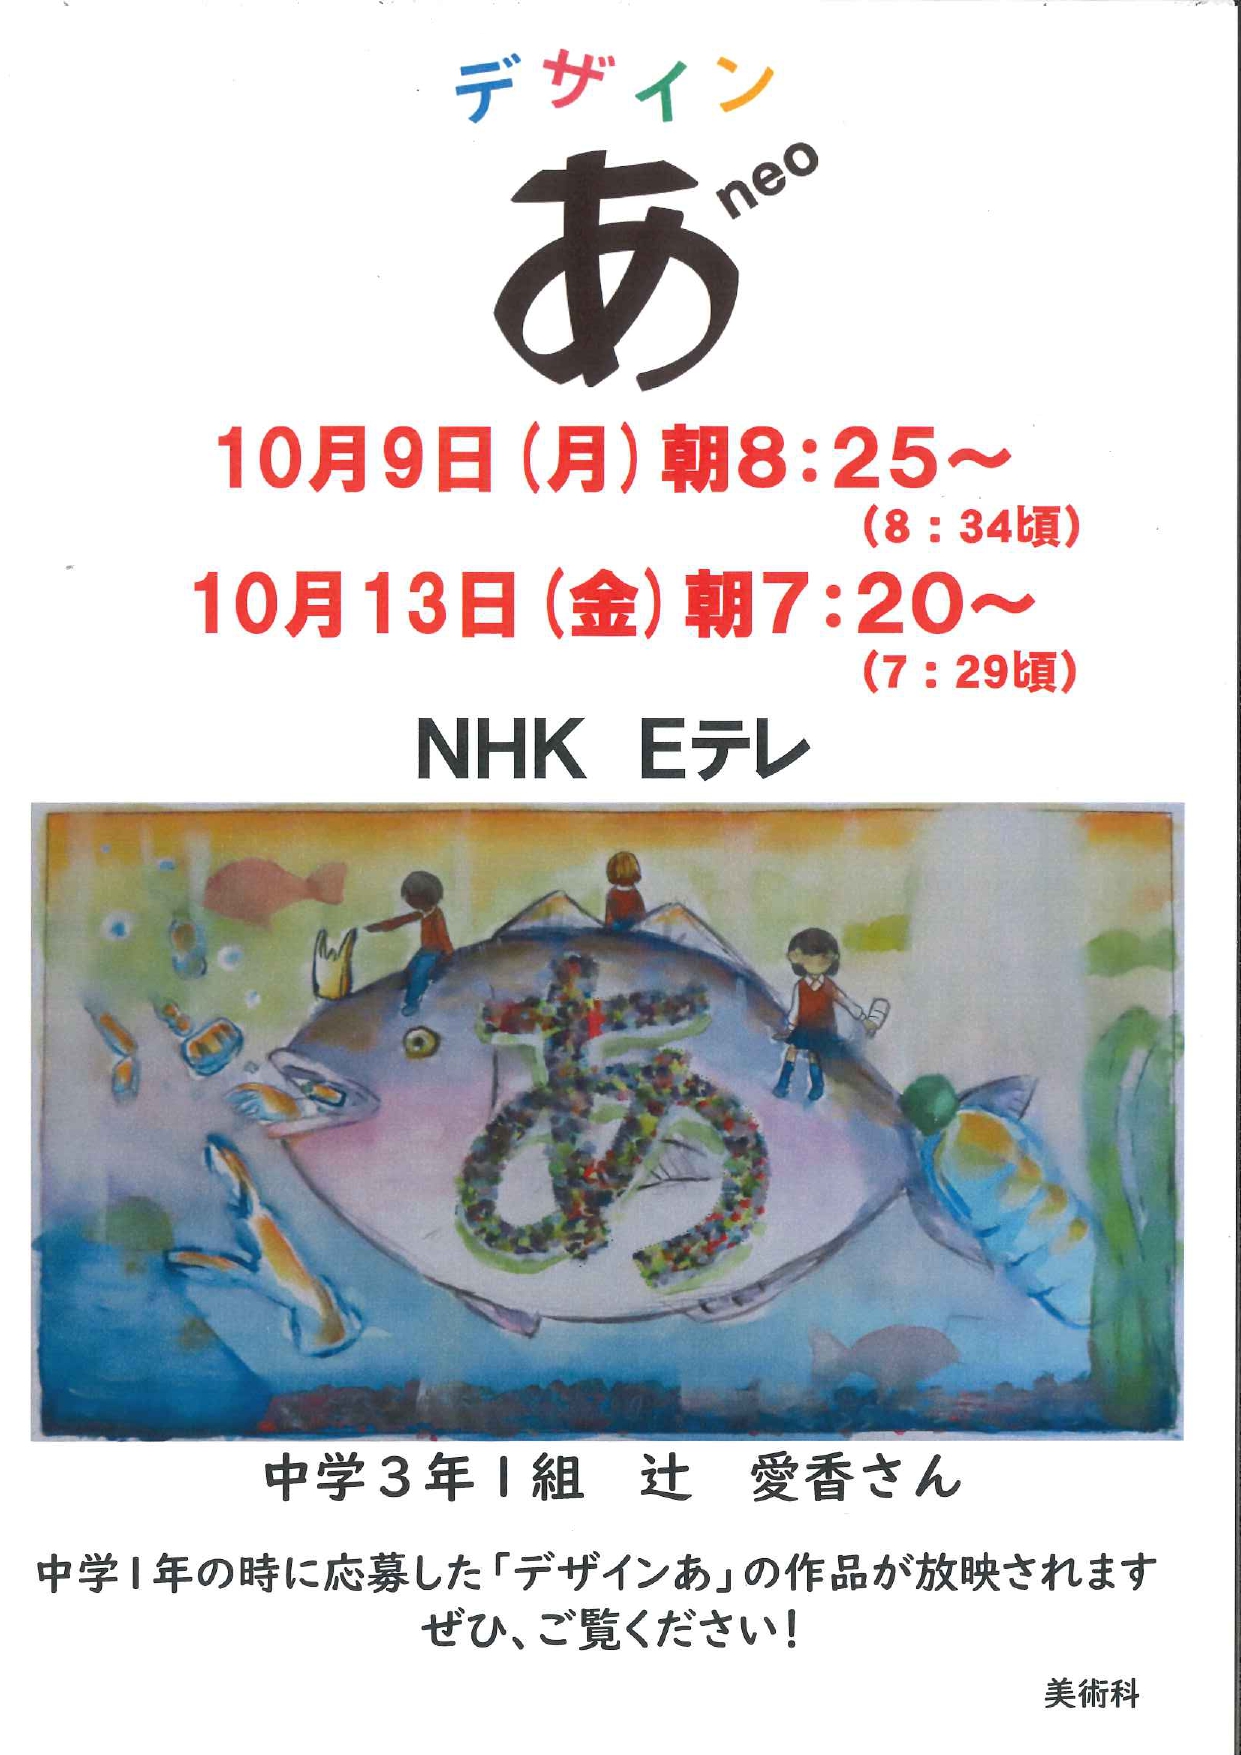 デザイン あ neo」（NHK Eテレ）において、本校生徒の作品が放送され